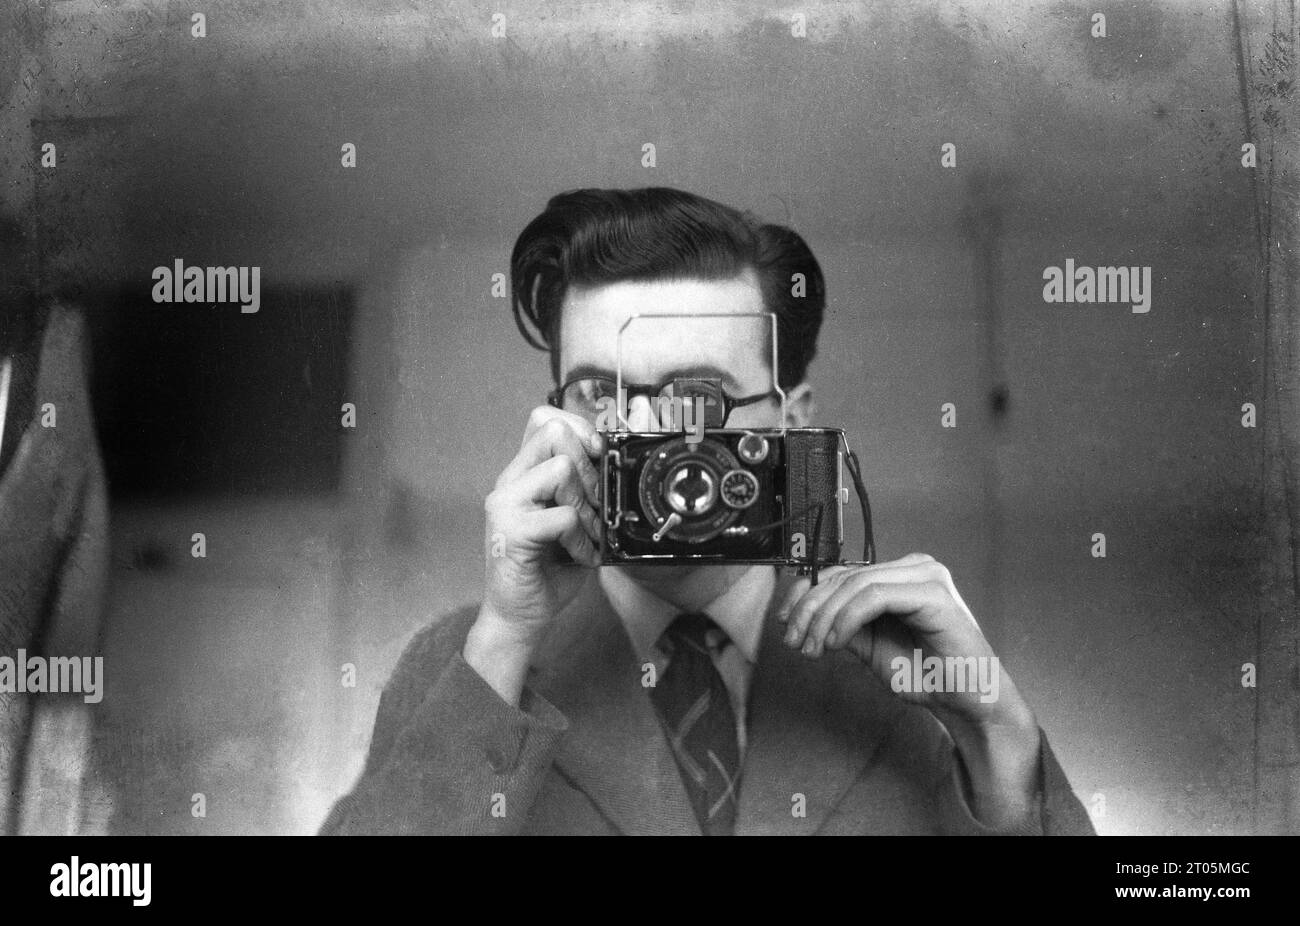 Anni '1950, storico, un giovane che usa una fotocamera pieghevole per scattare un autoritratto in uno specchio, Inghilterra, Regno Unito. Parole sulla fotocamera, IBSOR DRP, con un obiettivo Anastigmat, suggerendo che sta usando una fotocamera pieghevole di fabbricazione tedesca, che ha preso un film del 120, forse una Rodenstock. La fotocamera fotografica pieghevole, nota anche come fotocamera a soffietto, è stata inventata da Belfast nato, l'architetto britannico Francis Fowkel nel 1856. Foto Stock